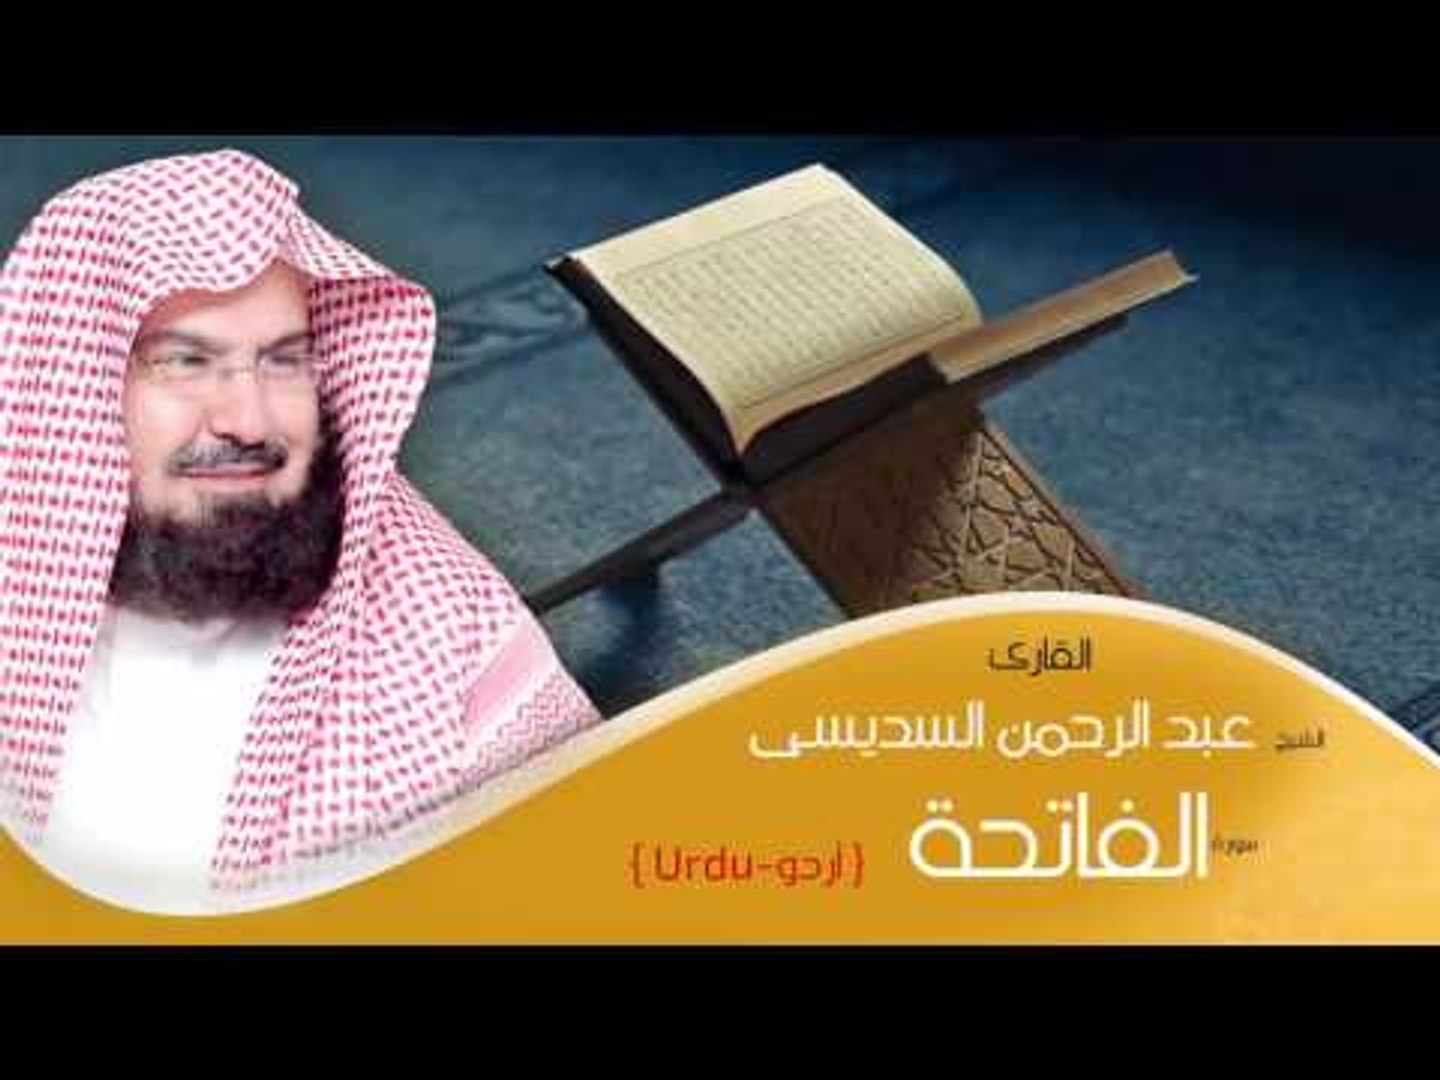 القران الكريم بصوت الشيخ عبد الرحمن السديس ( أردو ) - سورة الفاتحة - فيديو  Dailymotion